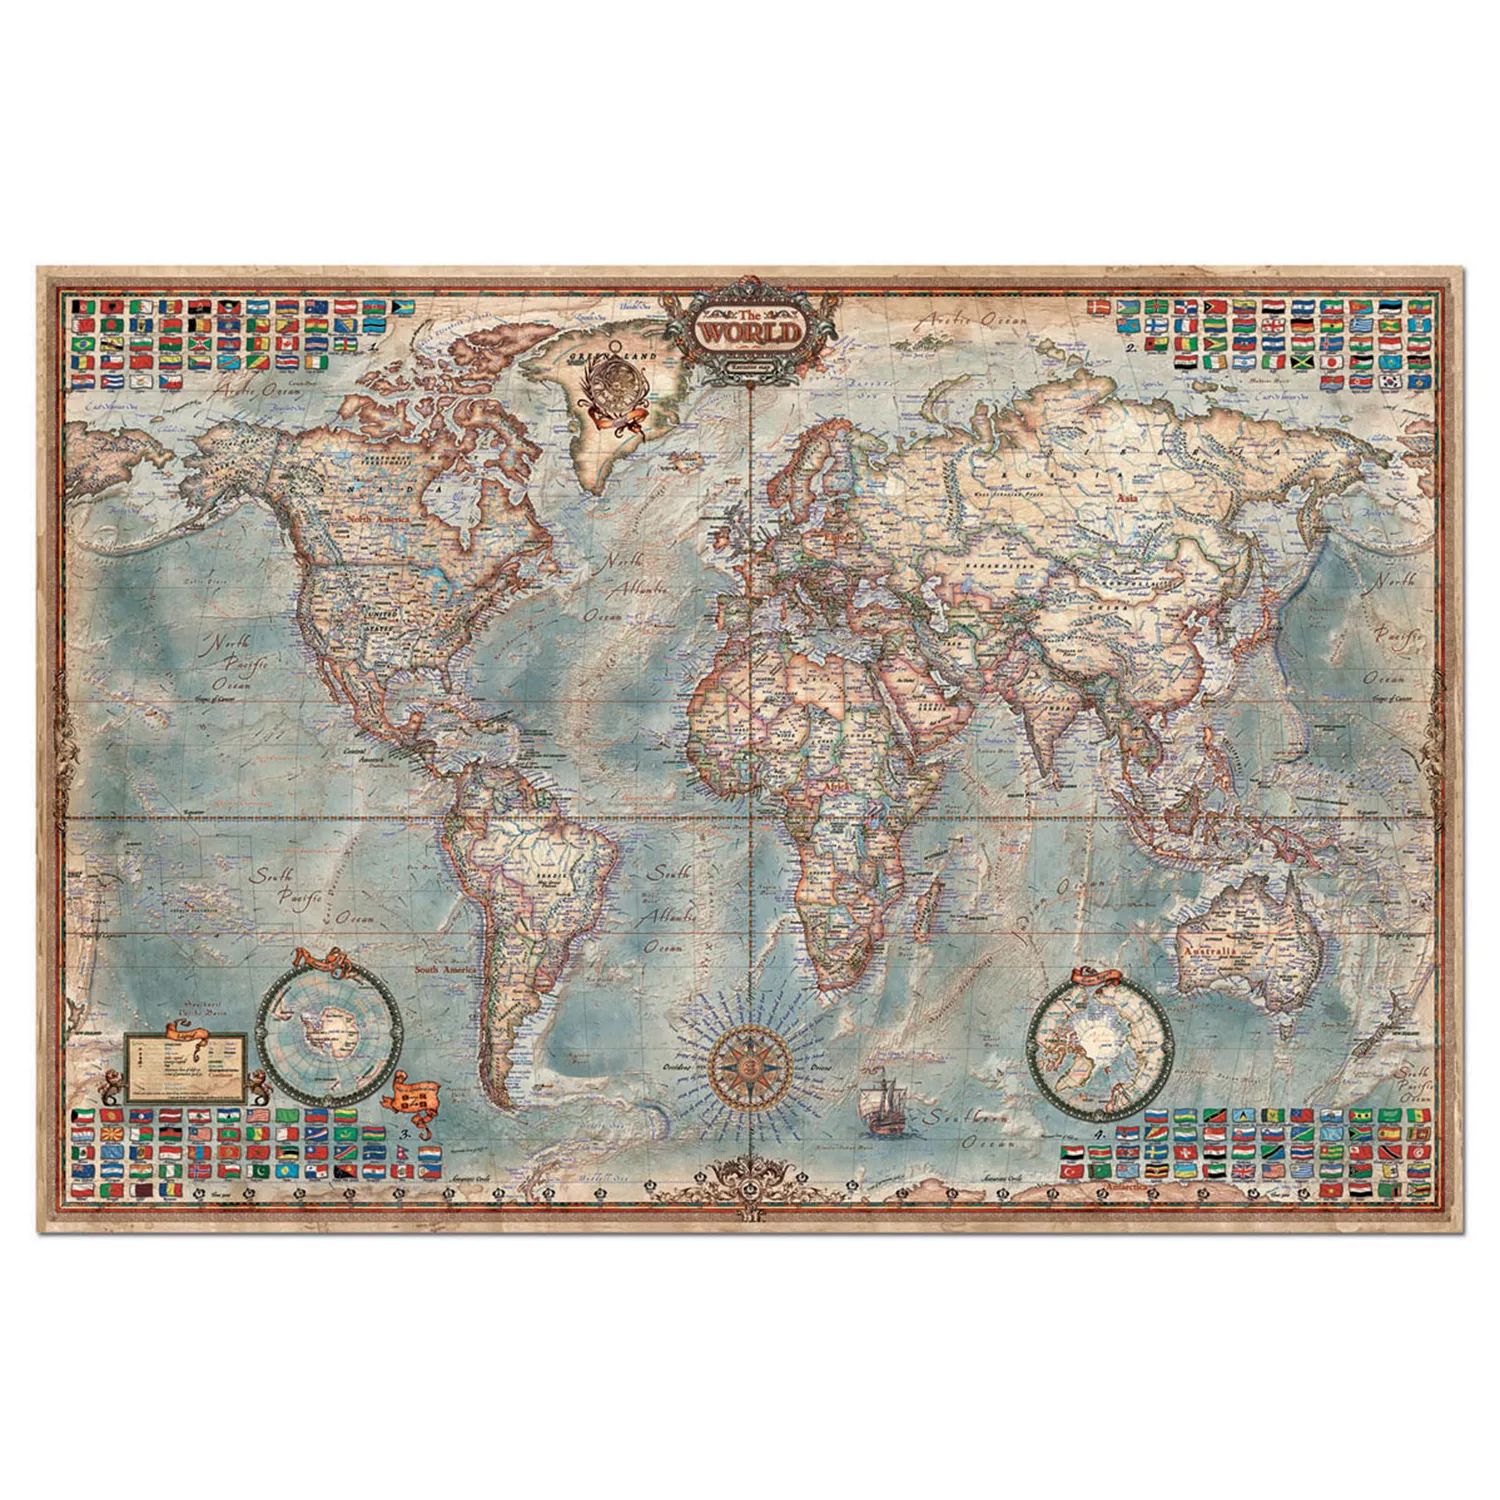 Educa Карта мира, 4000 шт. Пазл EDUCA пазлы educa пазл историческая карта мира 8000 деталей